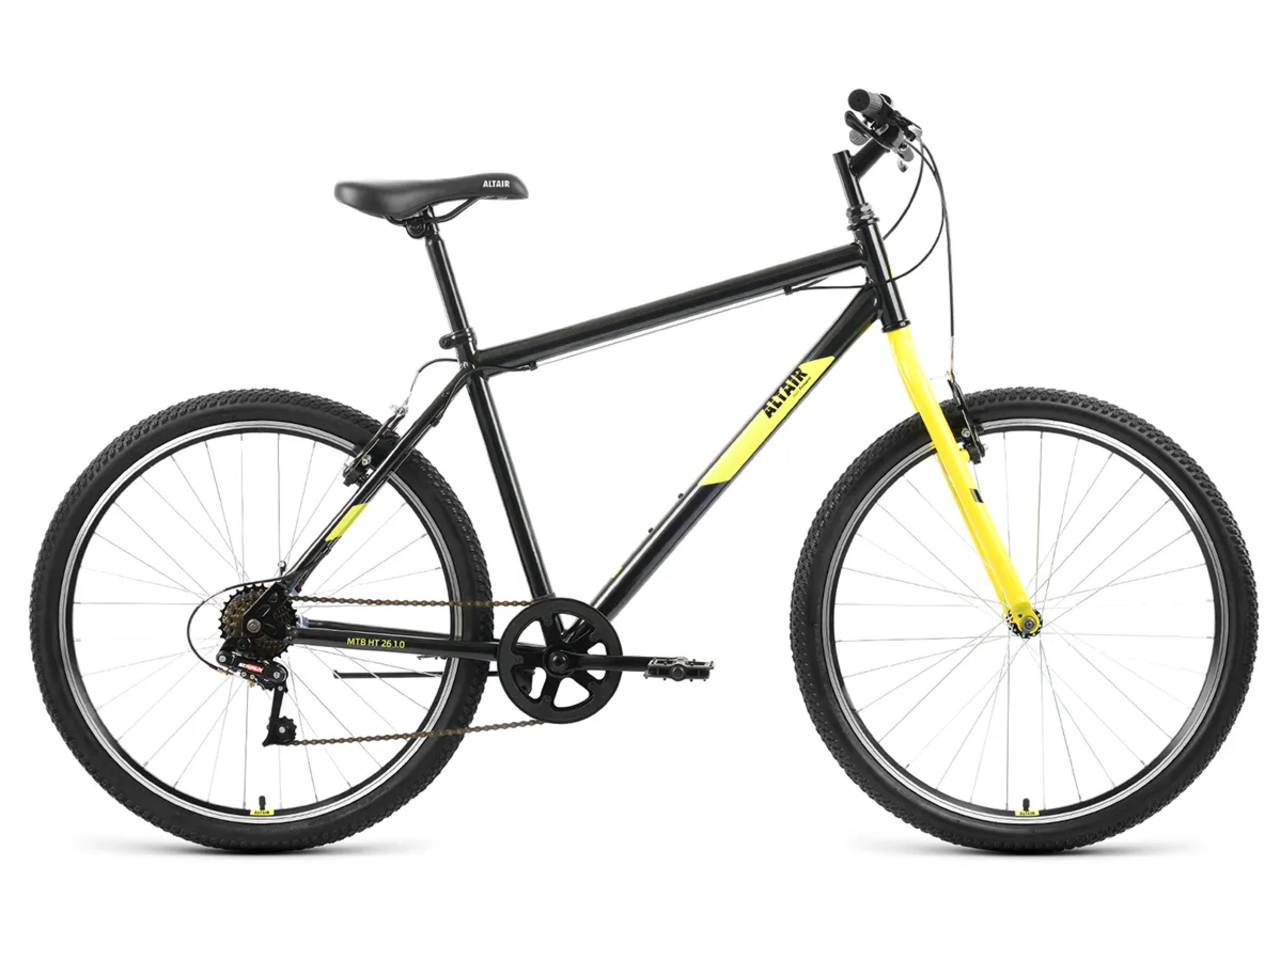 Велосипед ALTAIR MTB HT 26 1.0 р.19 2022 (черный/желтый)